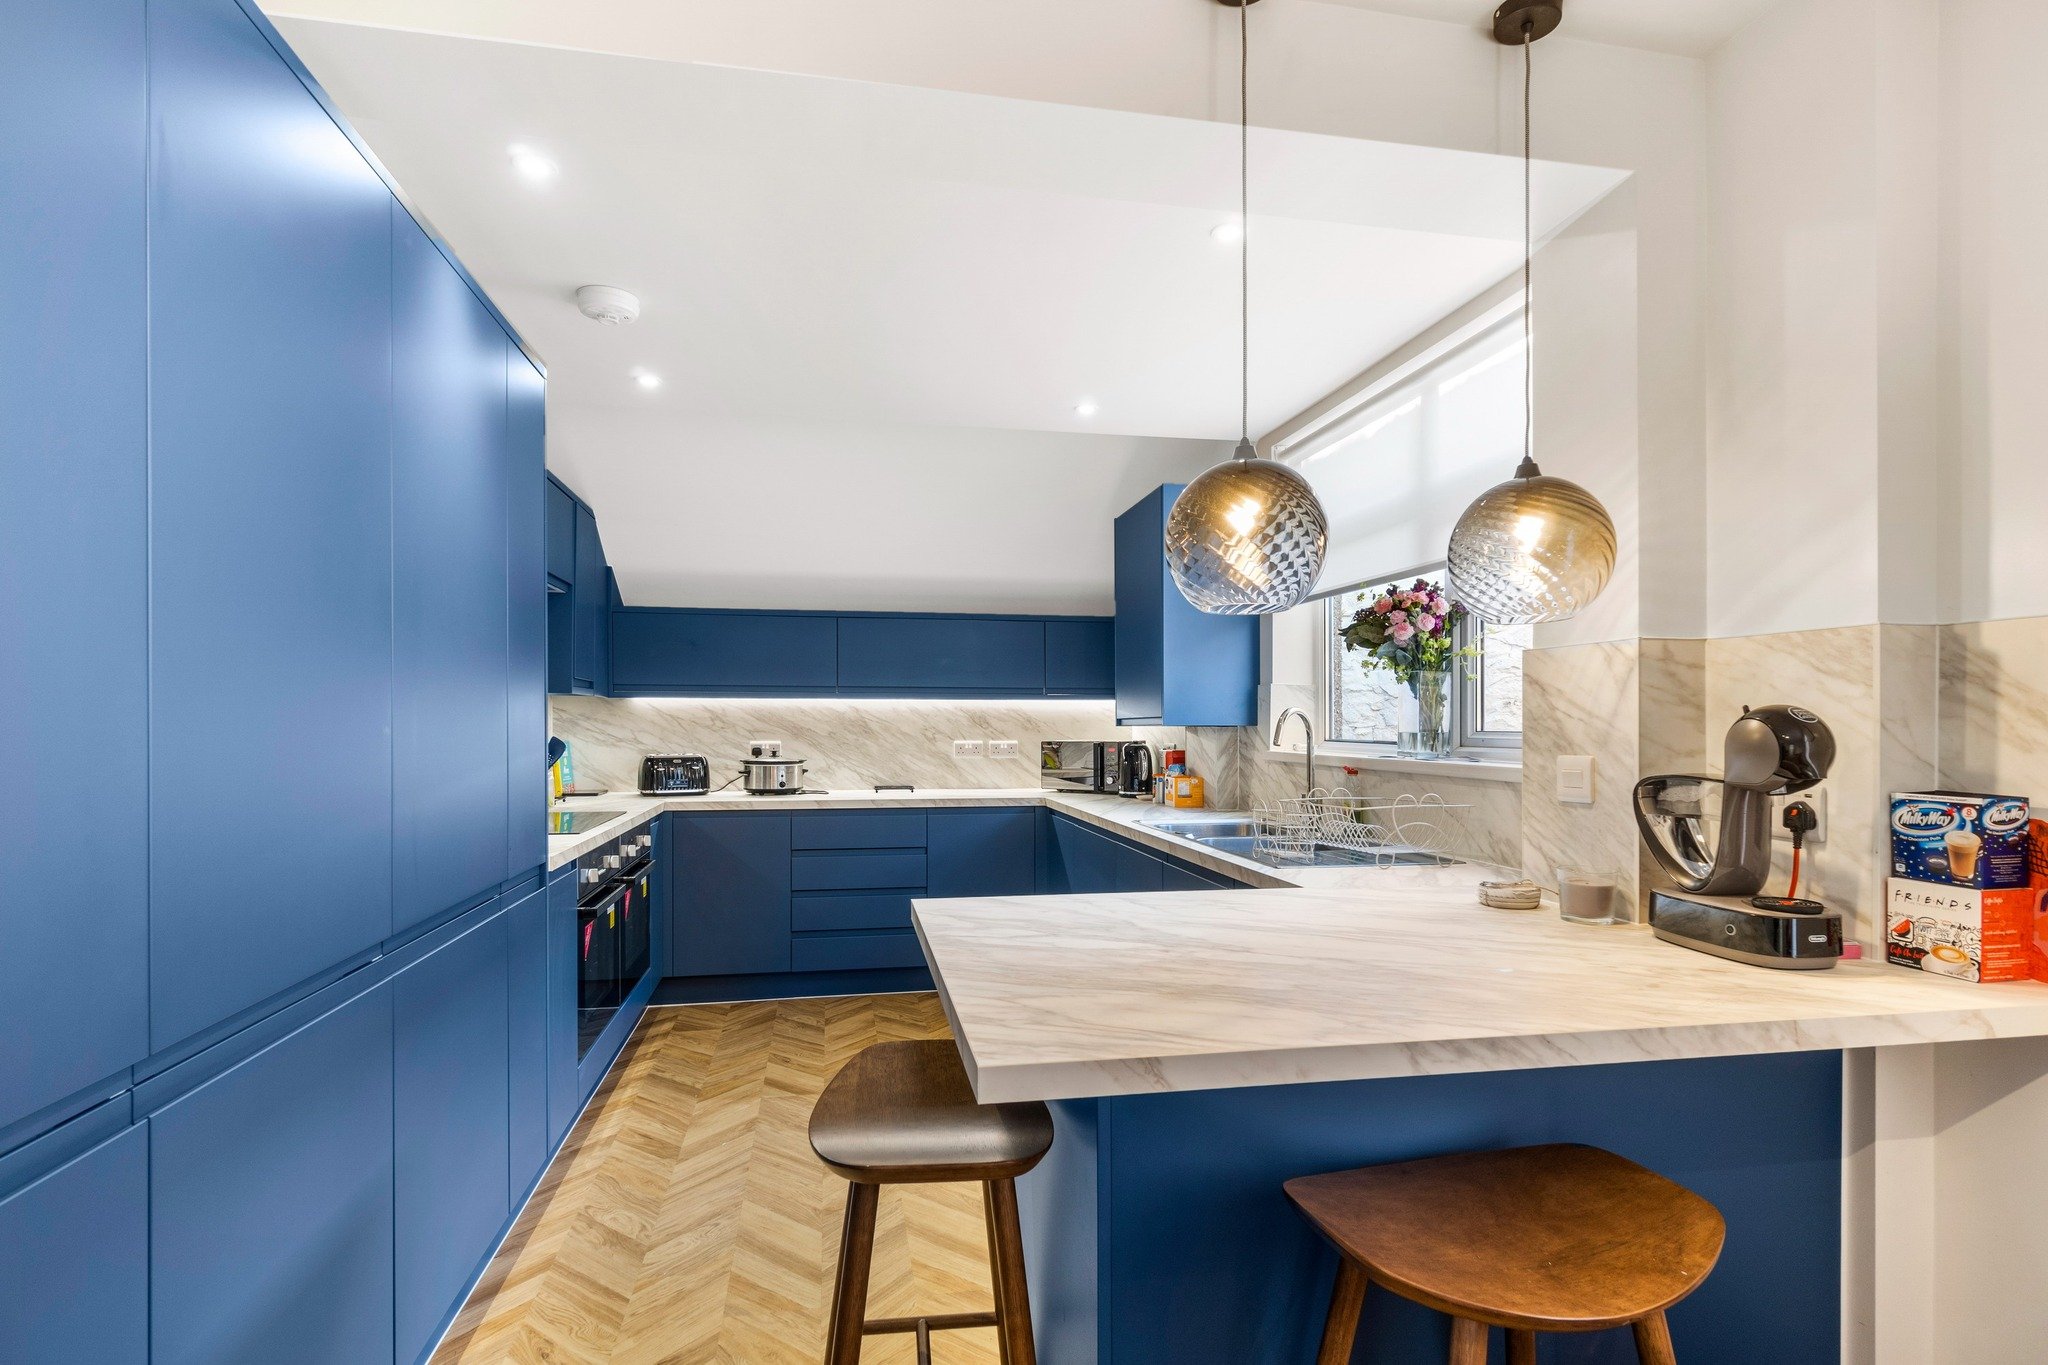 Practical and stylish kitchens to make shared living a breeze. 

 #HomeDecor #LuxuryLiving #UKRentals #LettingsAgent #PropertyManagement #HomeRentals #RealEstateUK #RentalProperty #lettingsagentuk #interiordesigner #sharedliving